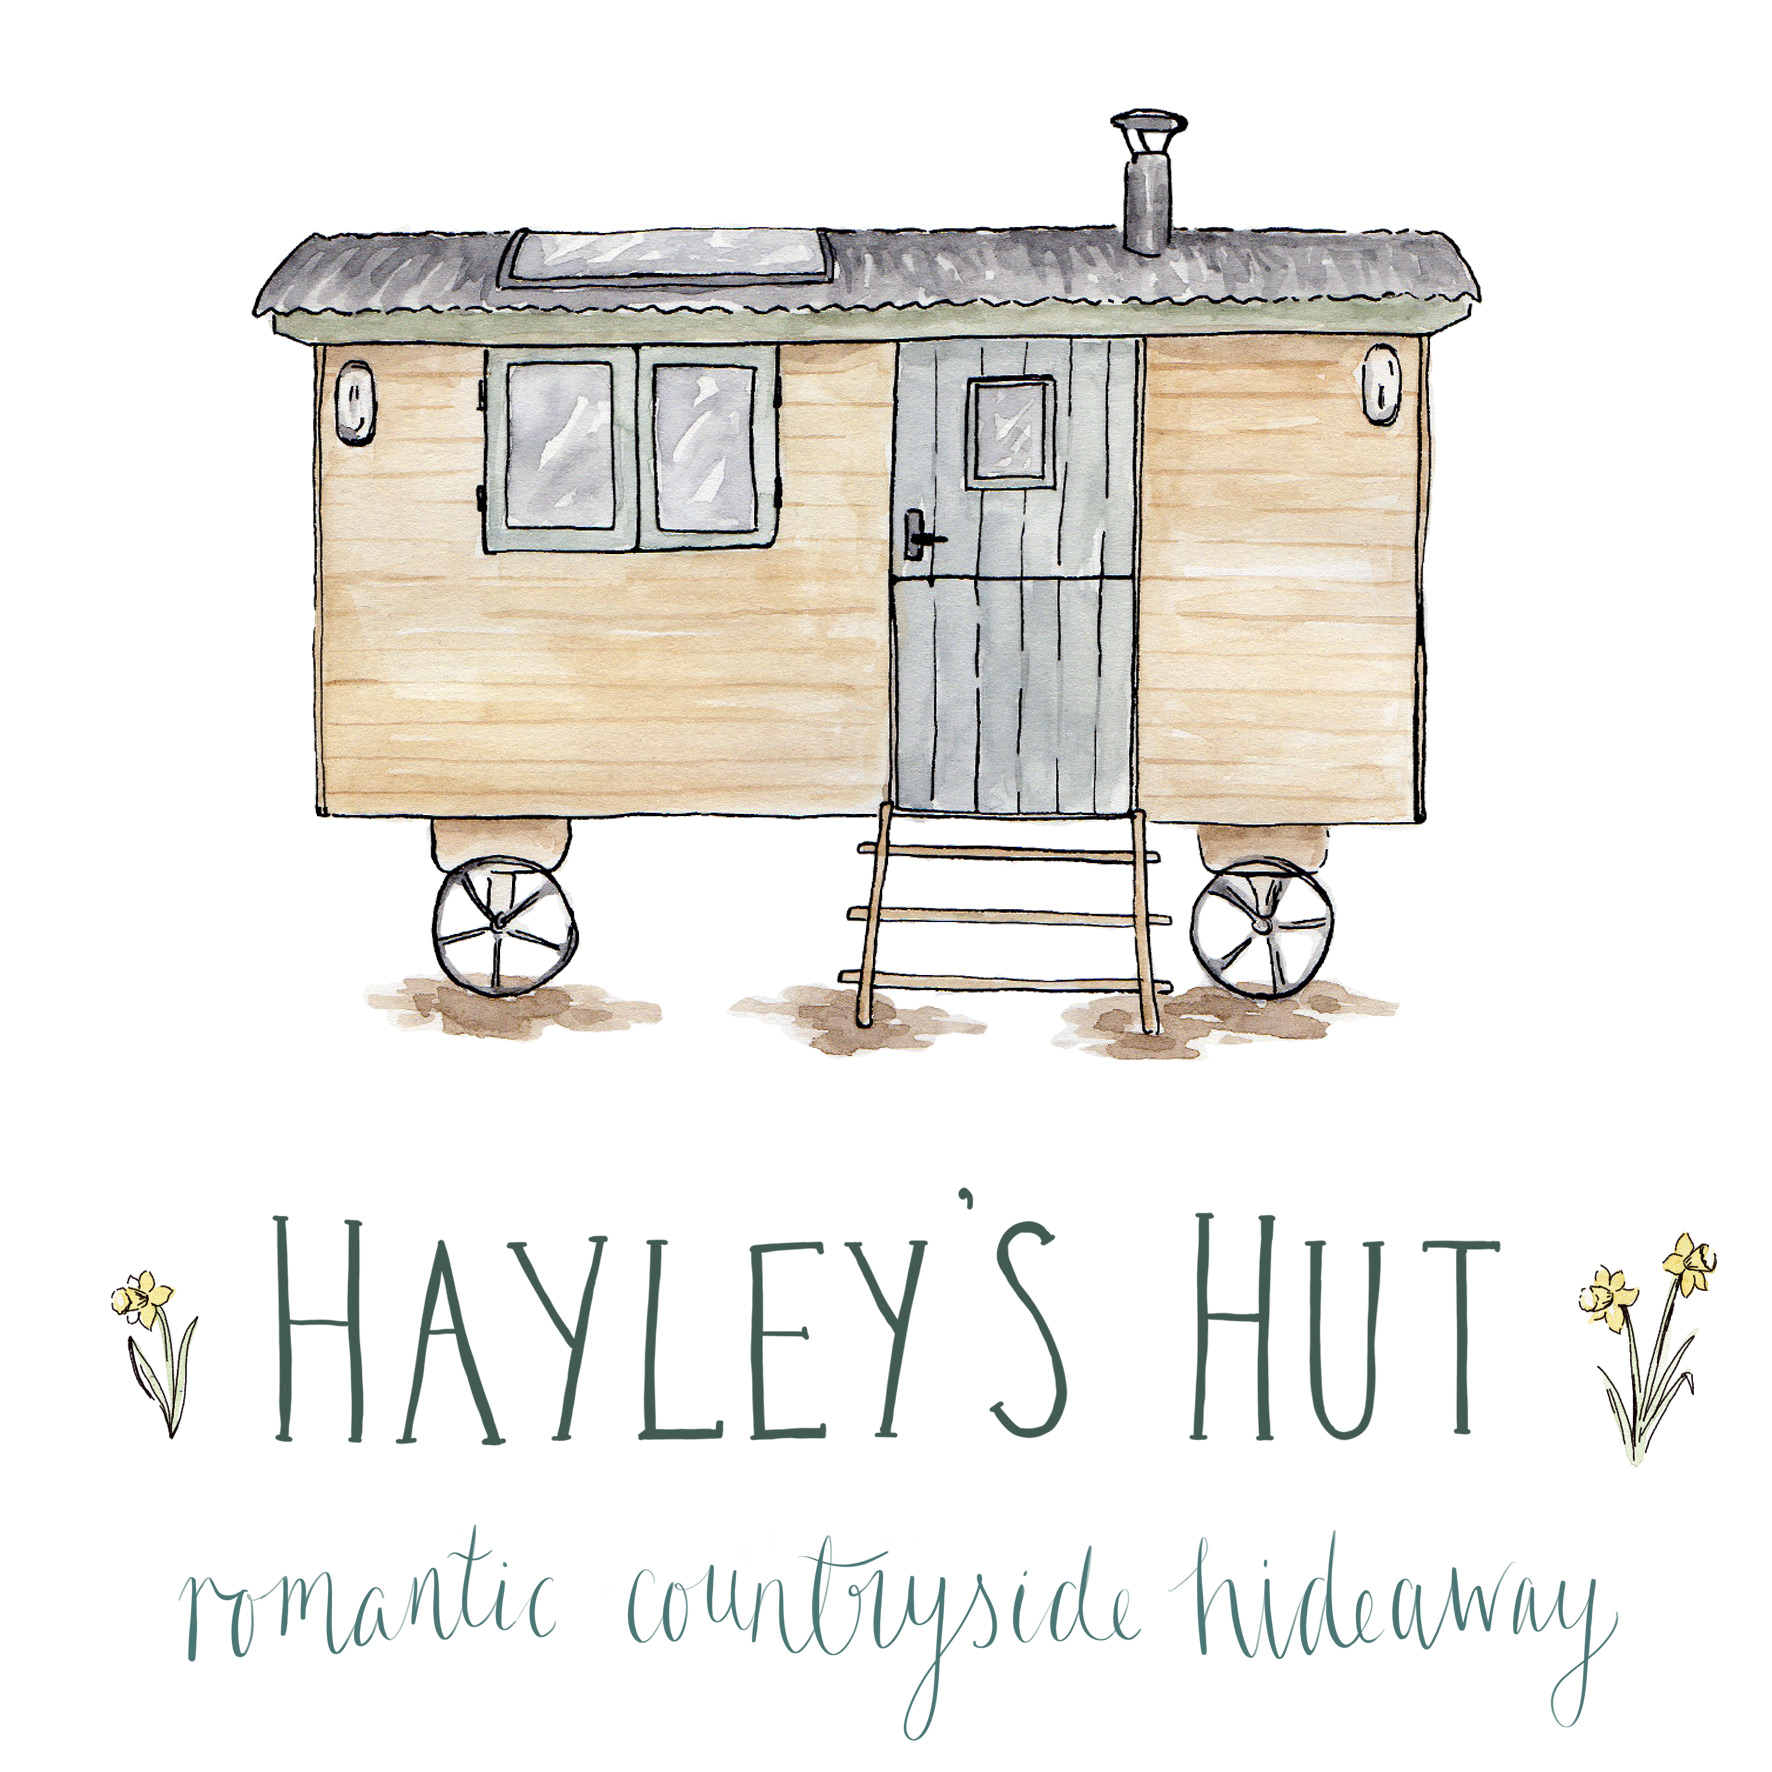 www.hayleys-hut.co.uk